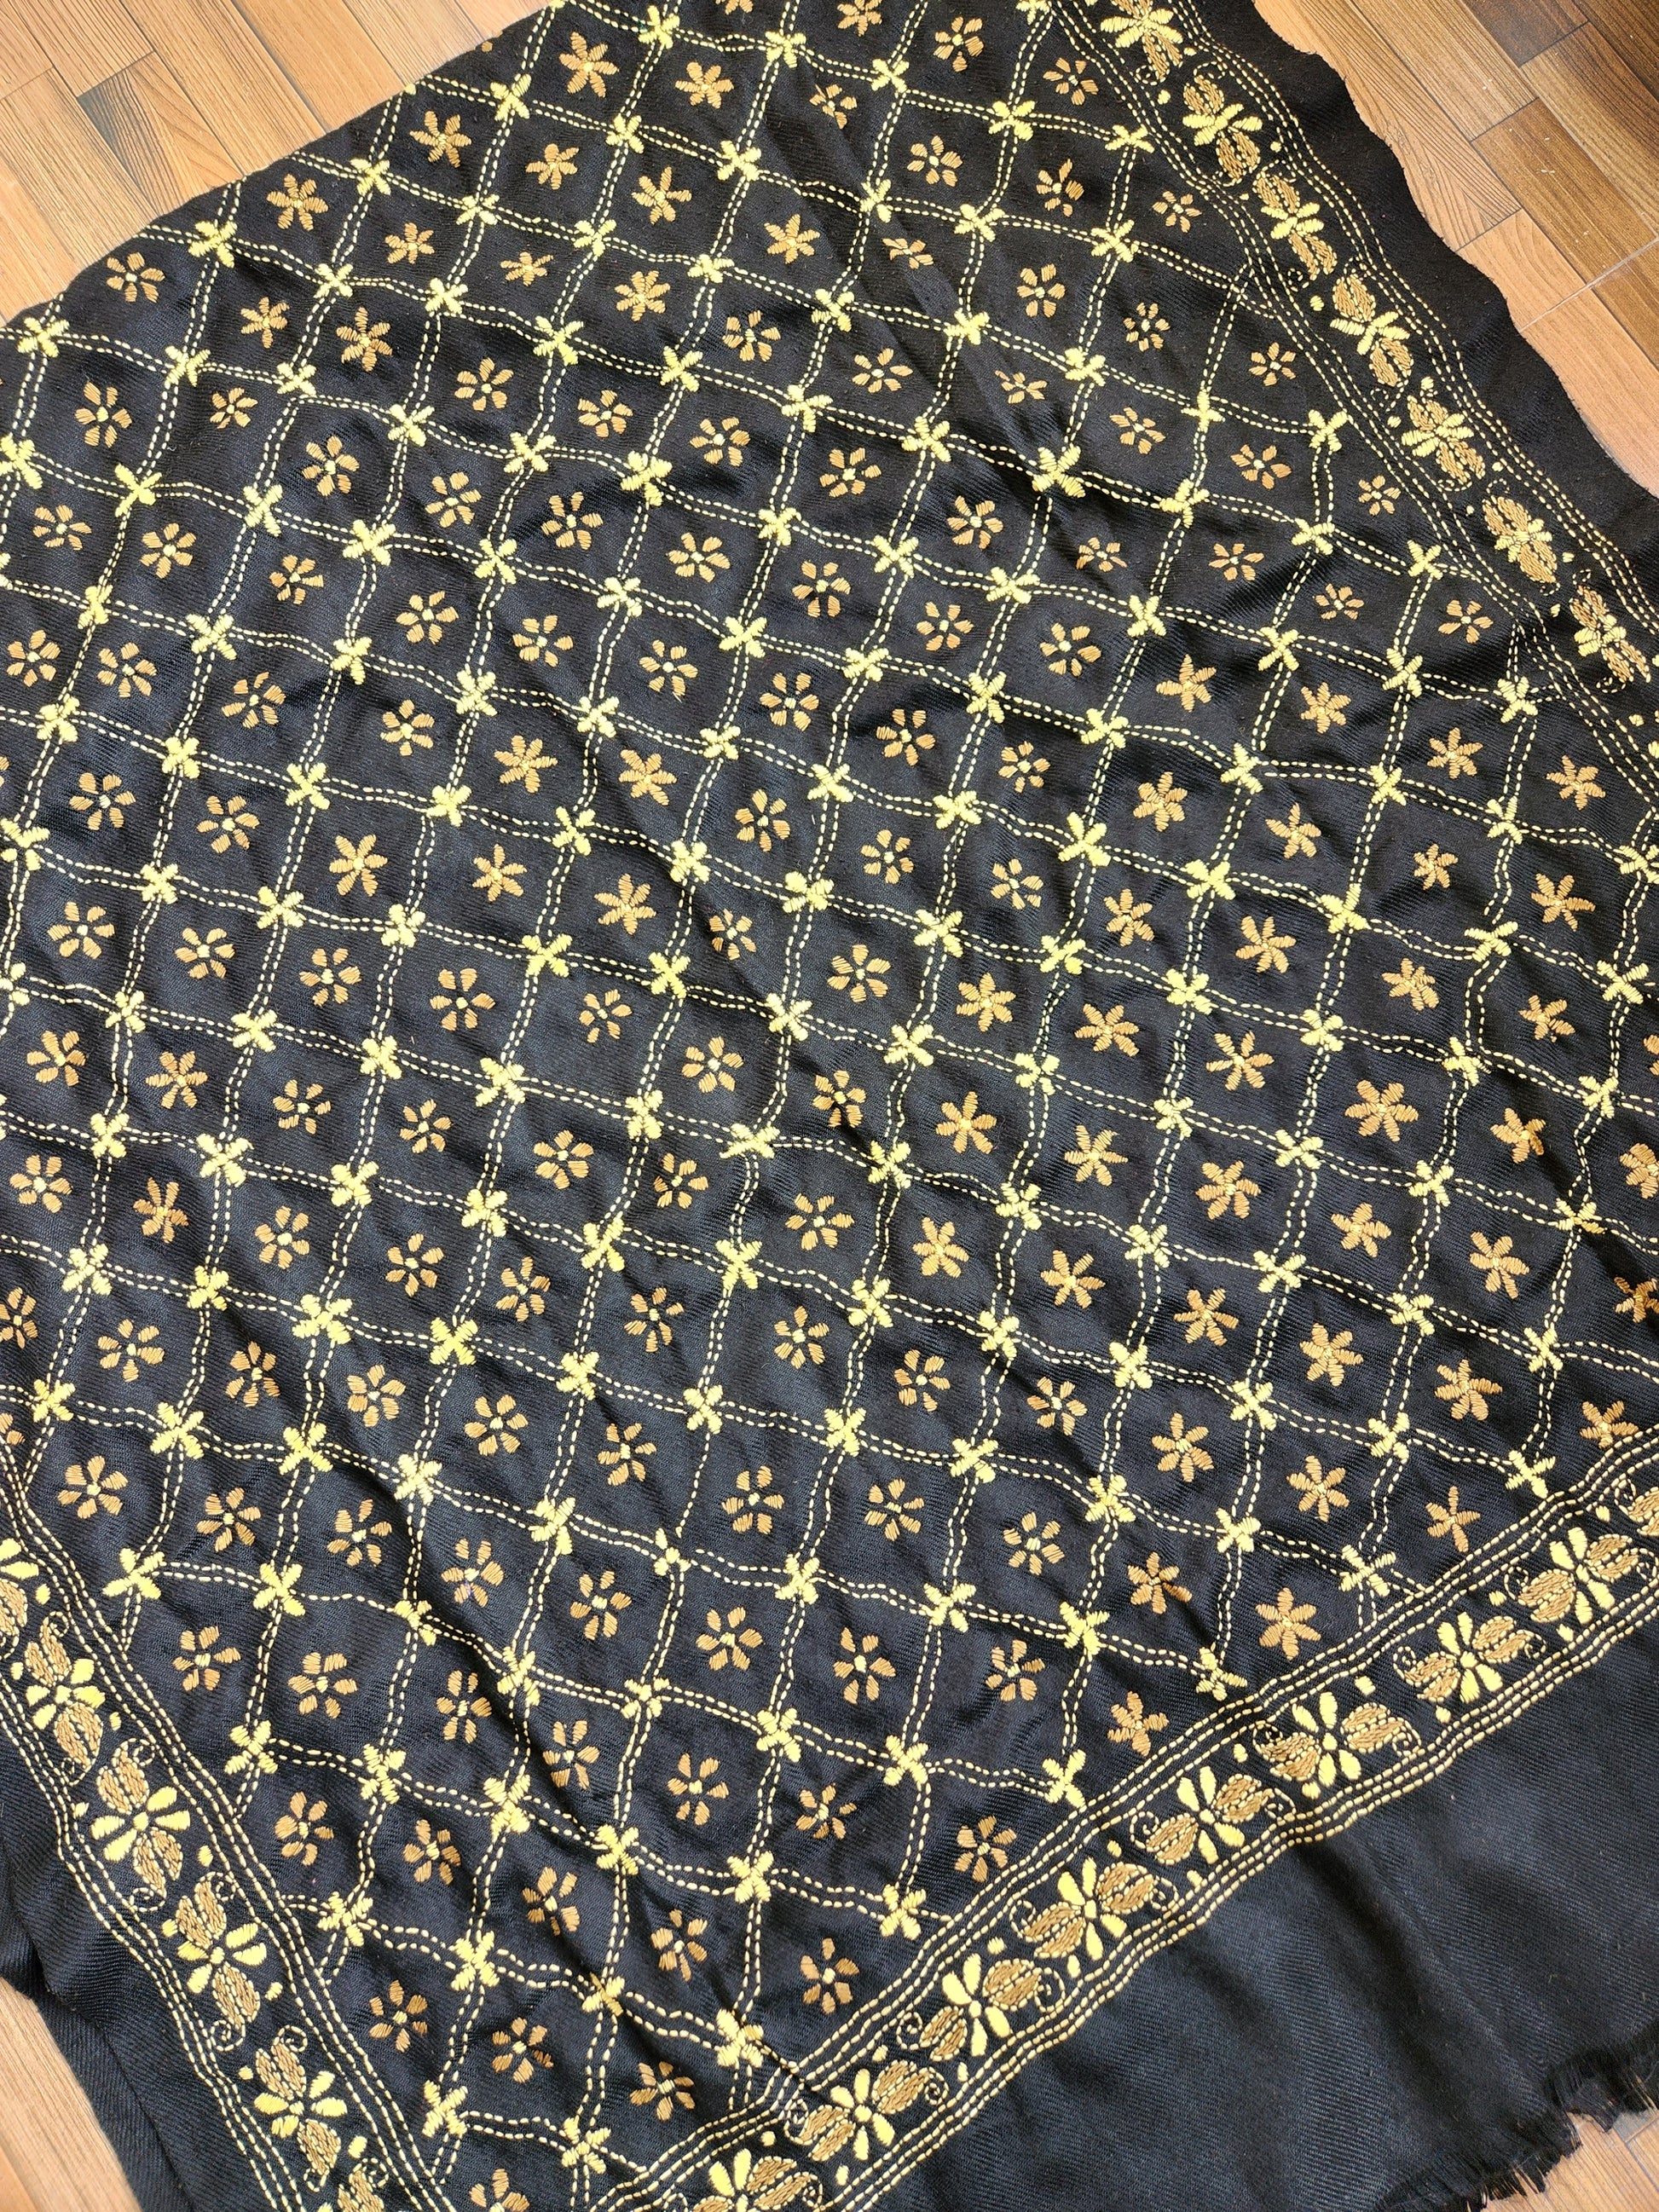 kantha shawl Indian gifts woolen wraps kantha